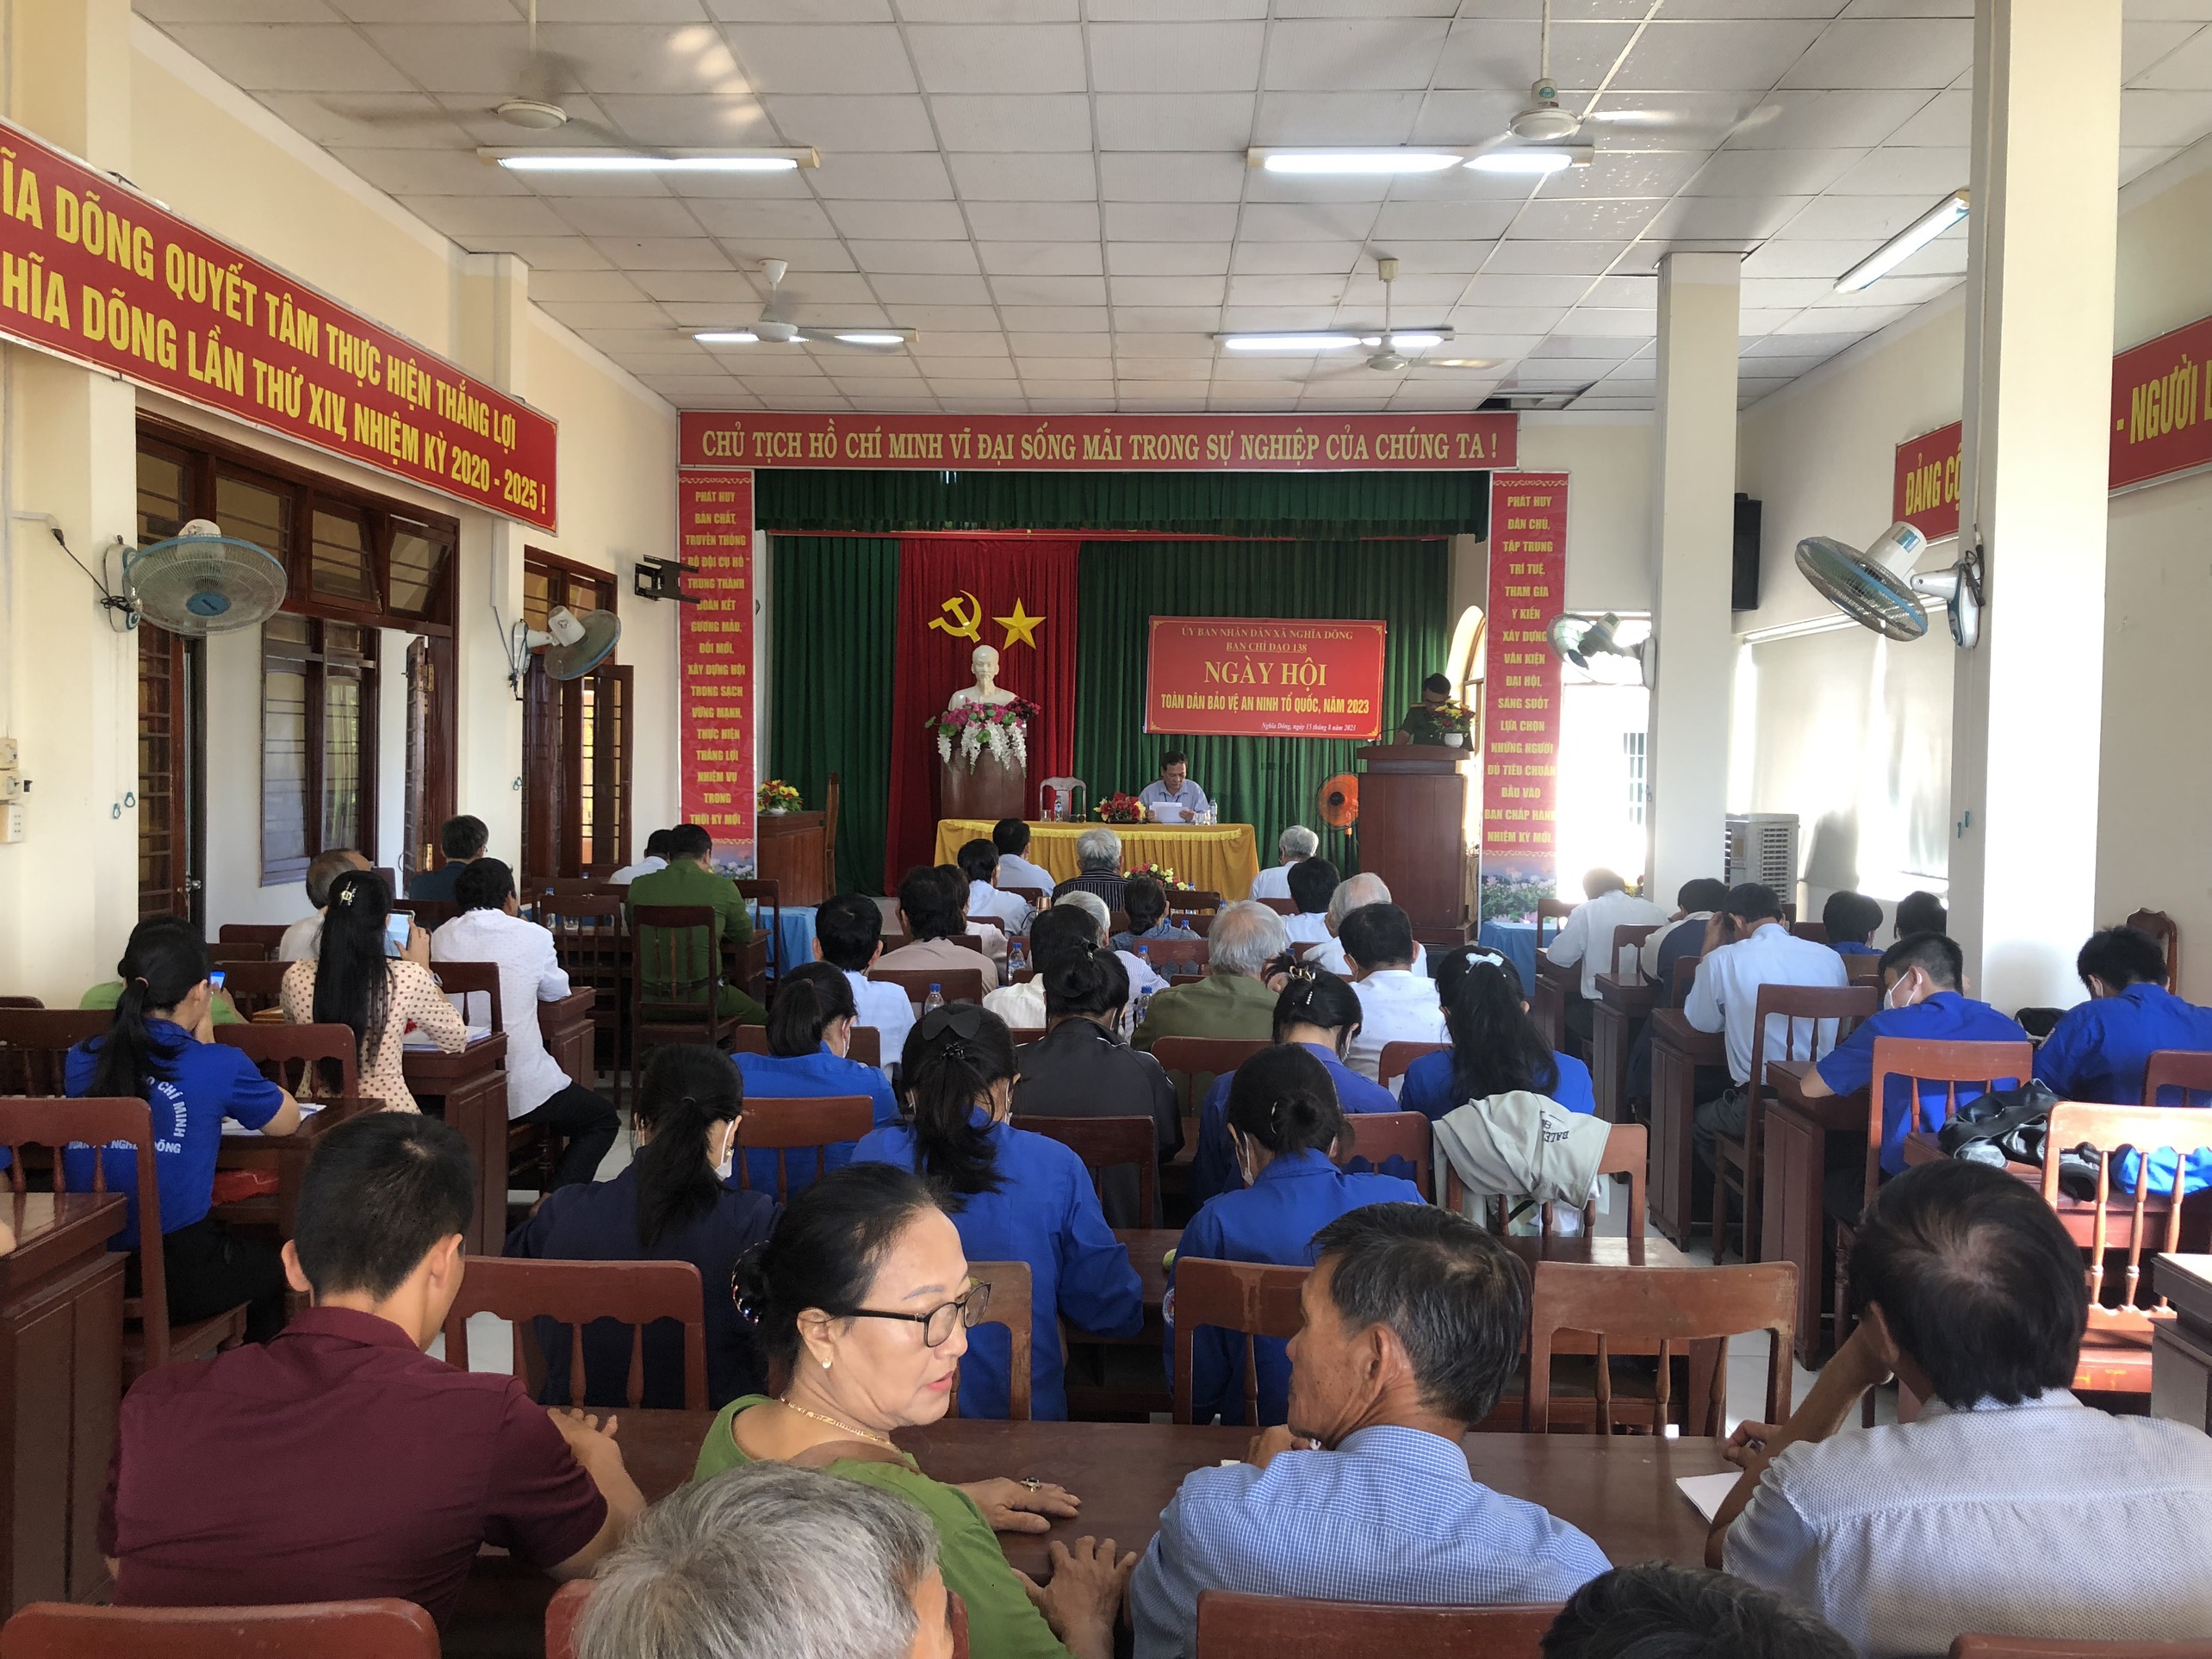 UBND xã Nghĩa Dõng, thành phố Quảng Ngãi Hội nghị phát động phong trào Ngày hội toàn dân bảo vệ an ninh Tổ quốc